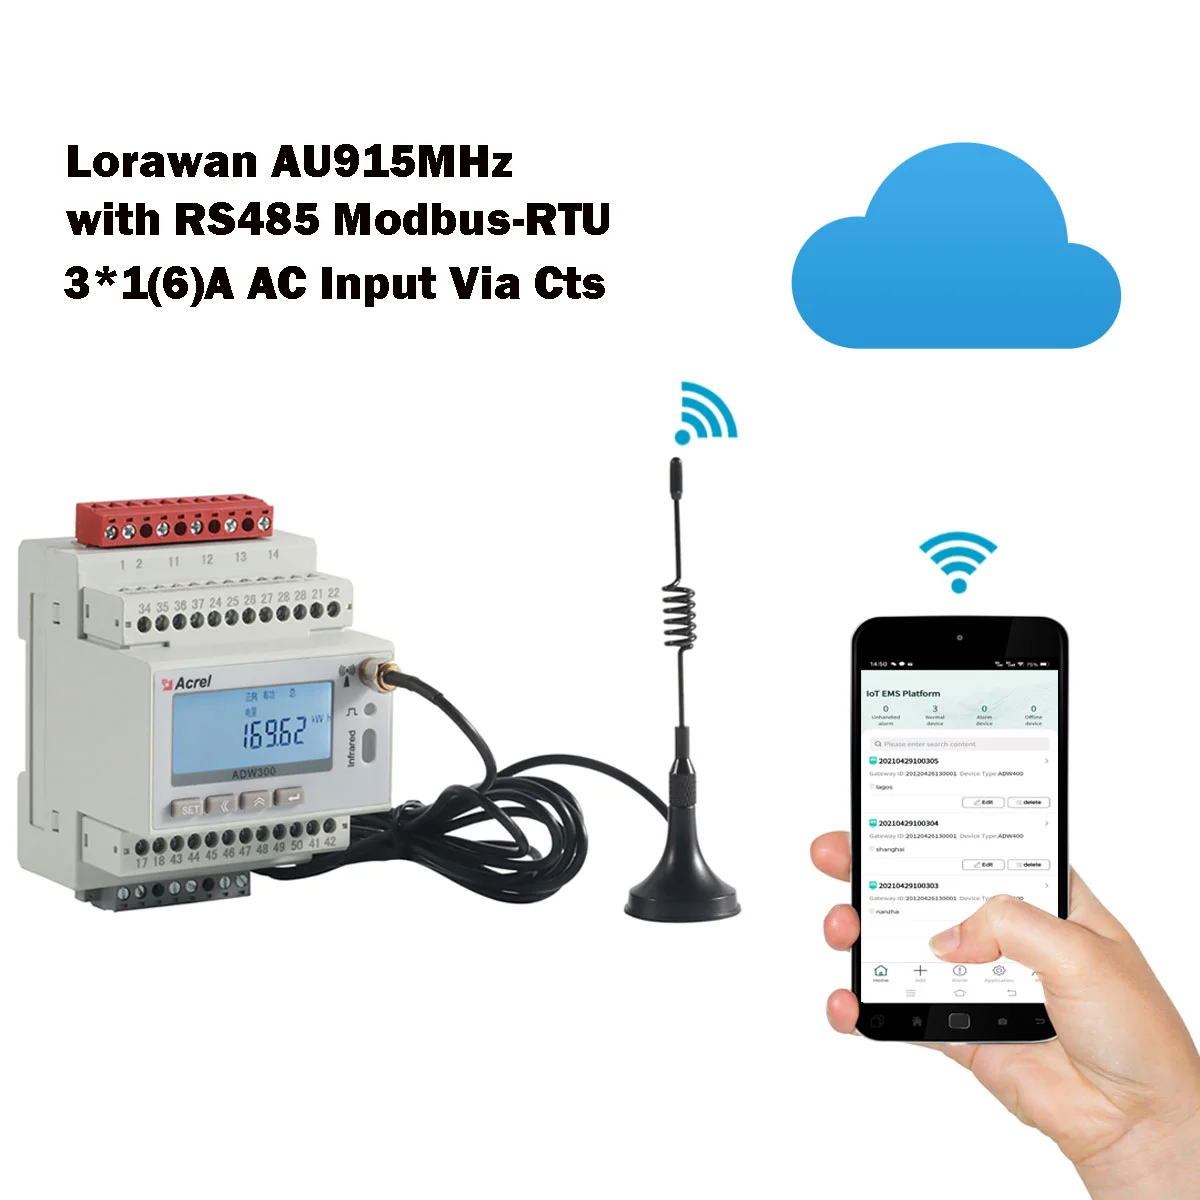 

ADW300-LW915 ЖК-дисплей 45 ~ 65 Гц Lorawan AU915MHz 3-фазный Интеллектуальный Iot счетчик энергии 3*1(6)A AC с Rs485 Modbus-RTU